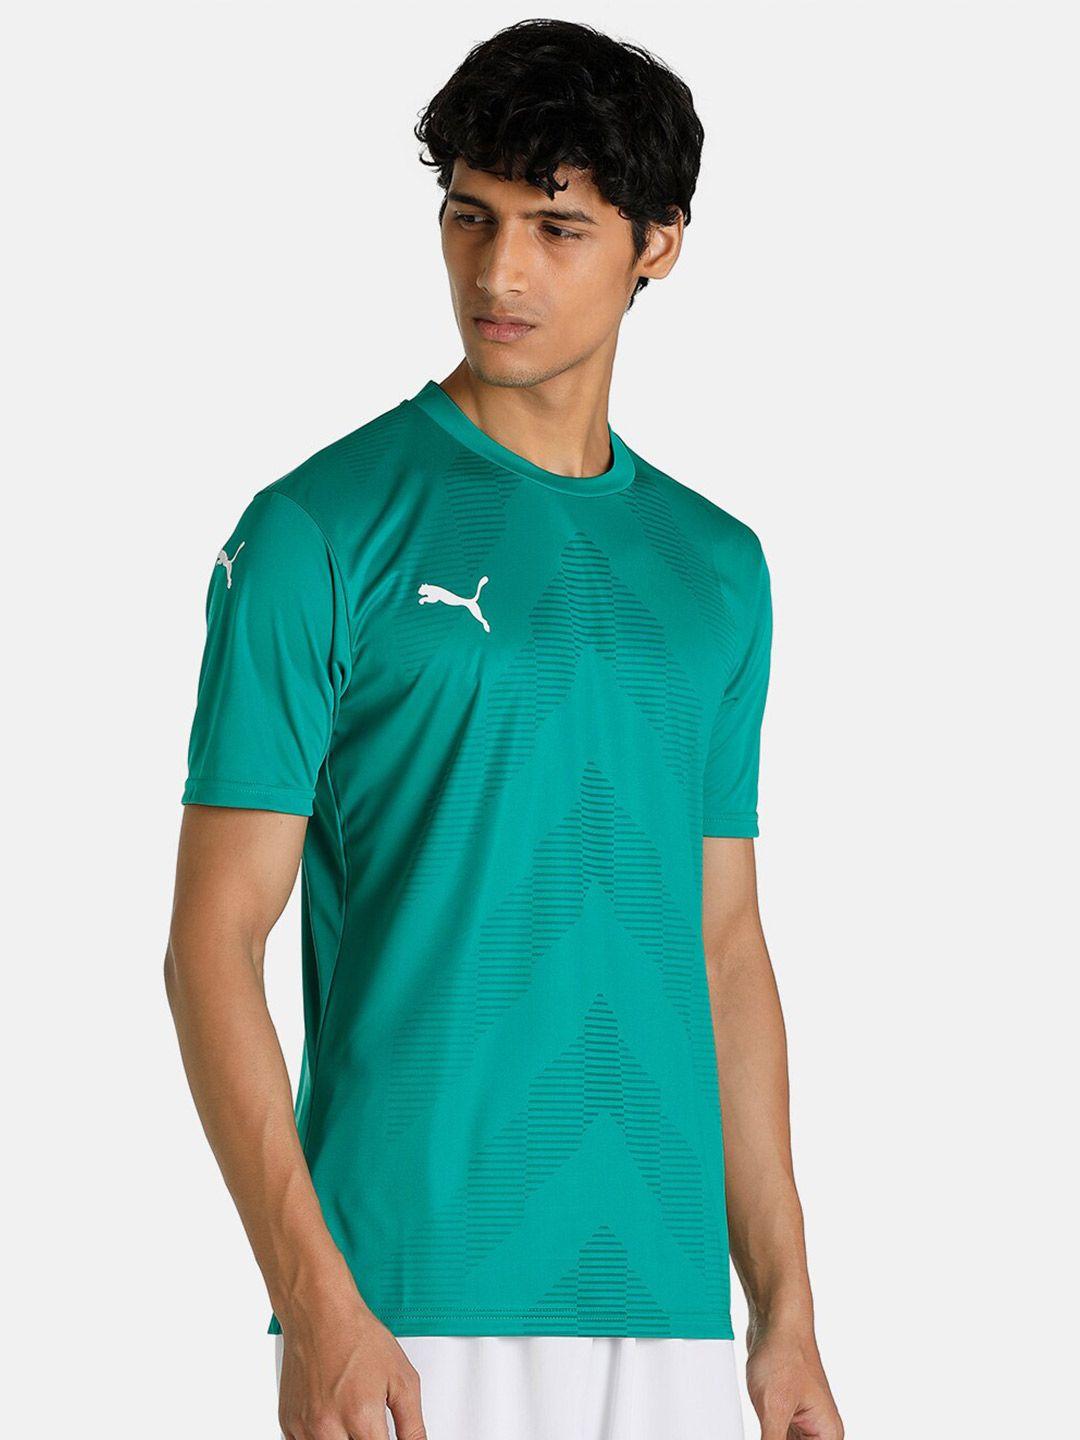 puma men green cotton football jersey t shirt